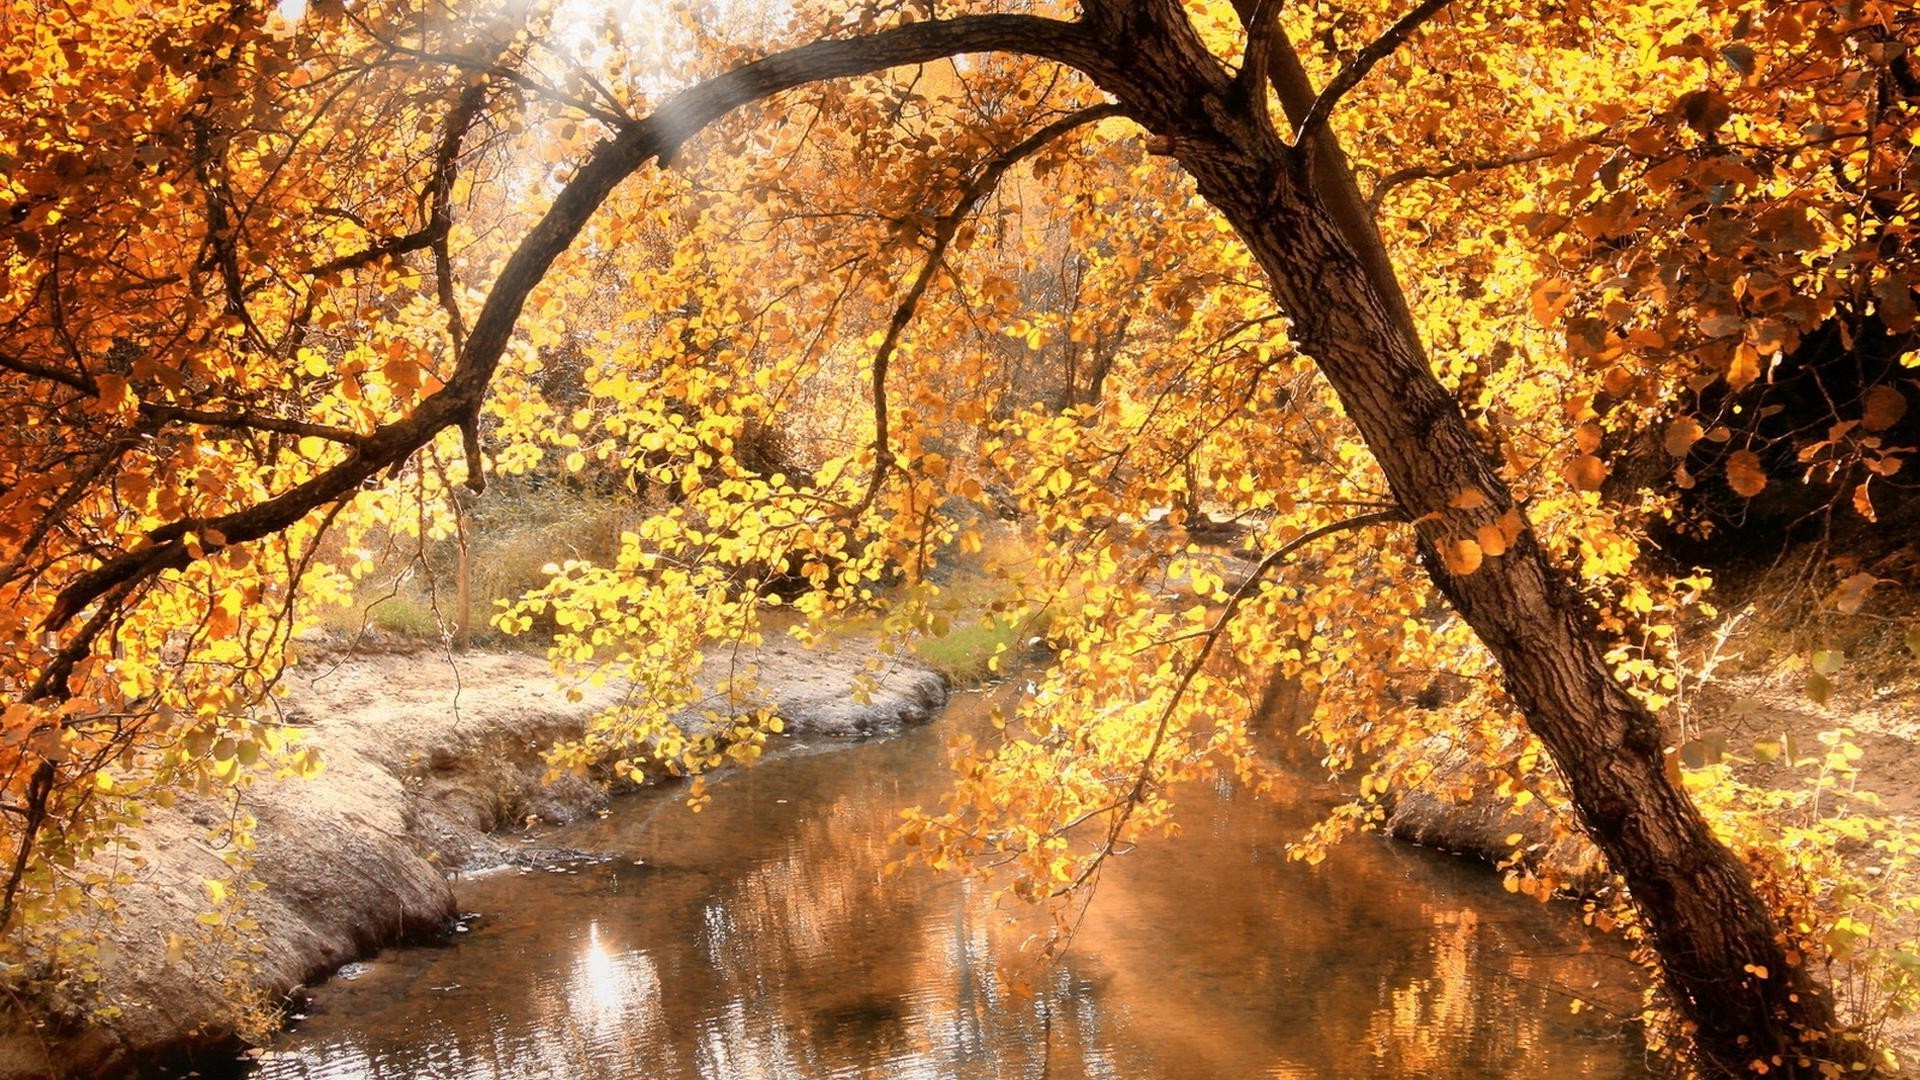 реки пруды и ручьи прудов и ручьев осень дерево лист пейзаж природа сезон парк древесины филиал золото на открытом воздухе кленовый живописный среды пейзажи хорошую погоду рассвет